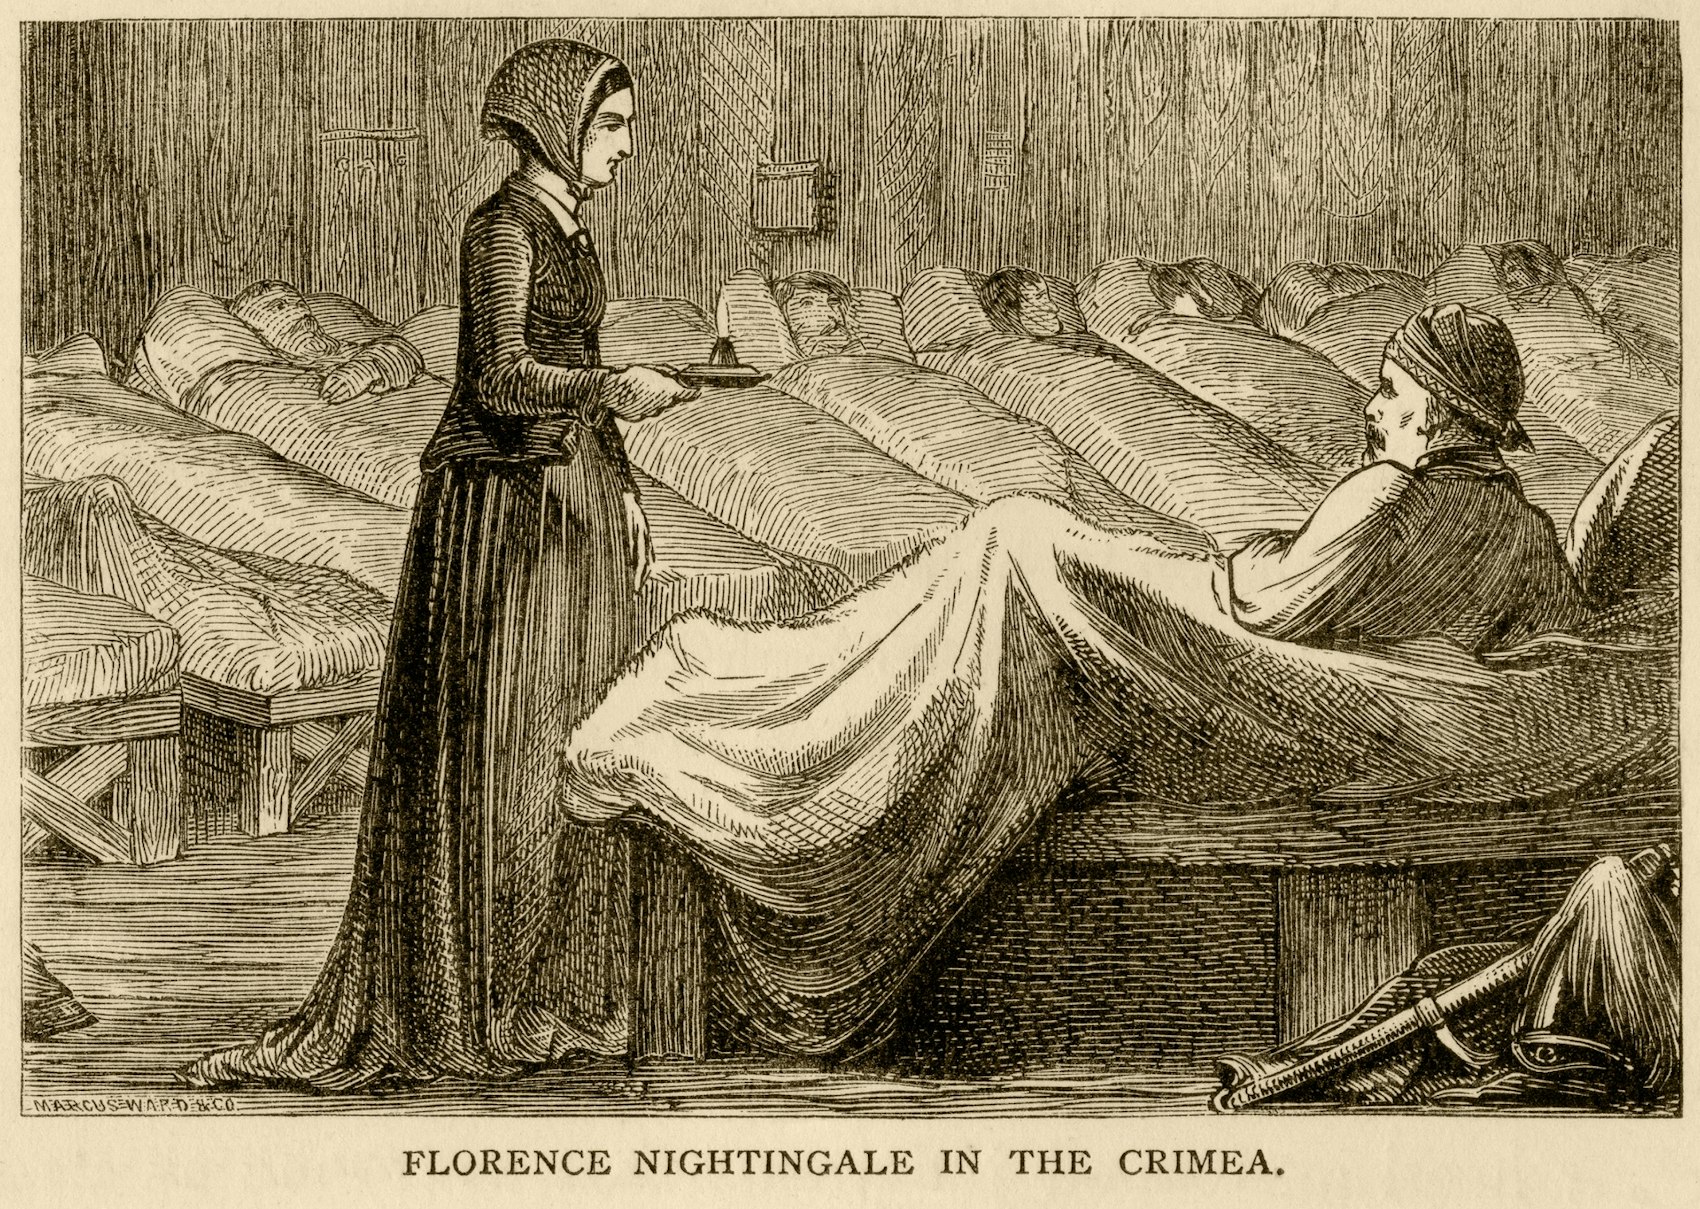 Florence Nightingale besucht einen kranken Mann in einem vollen Krankensaal